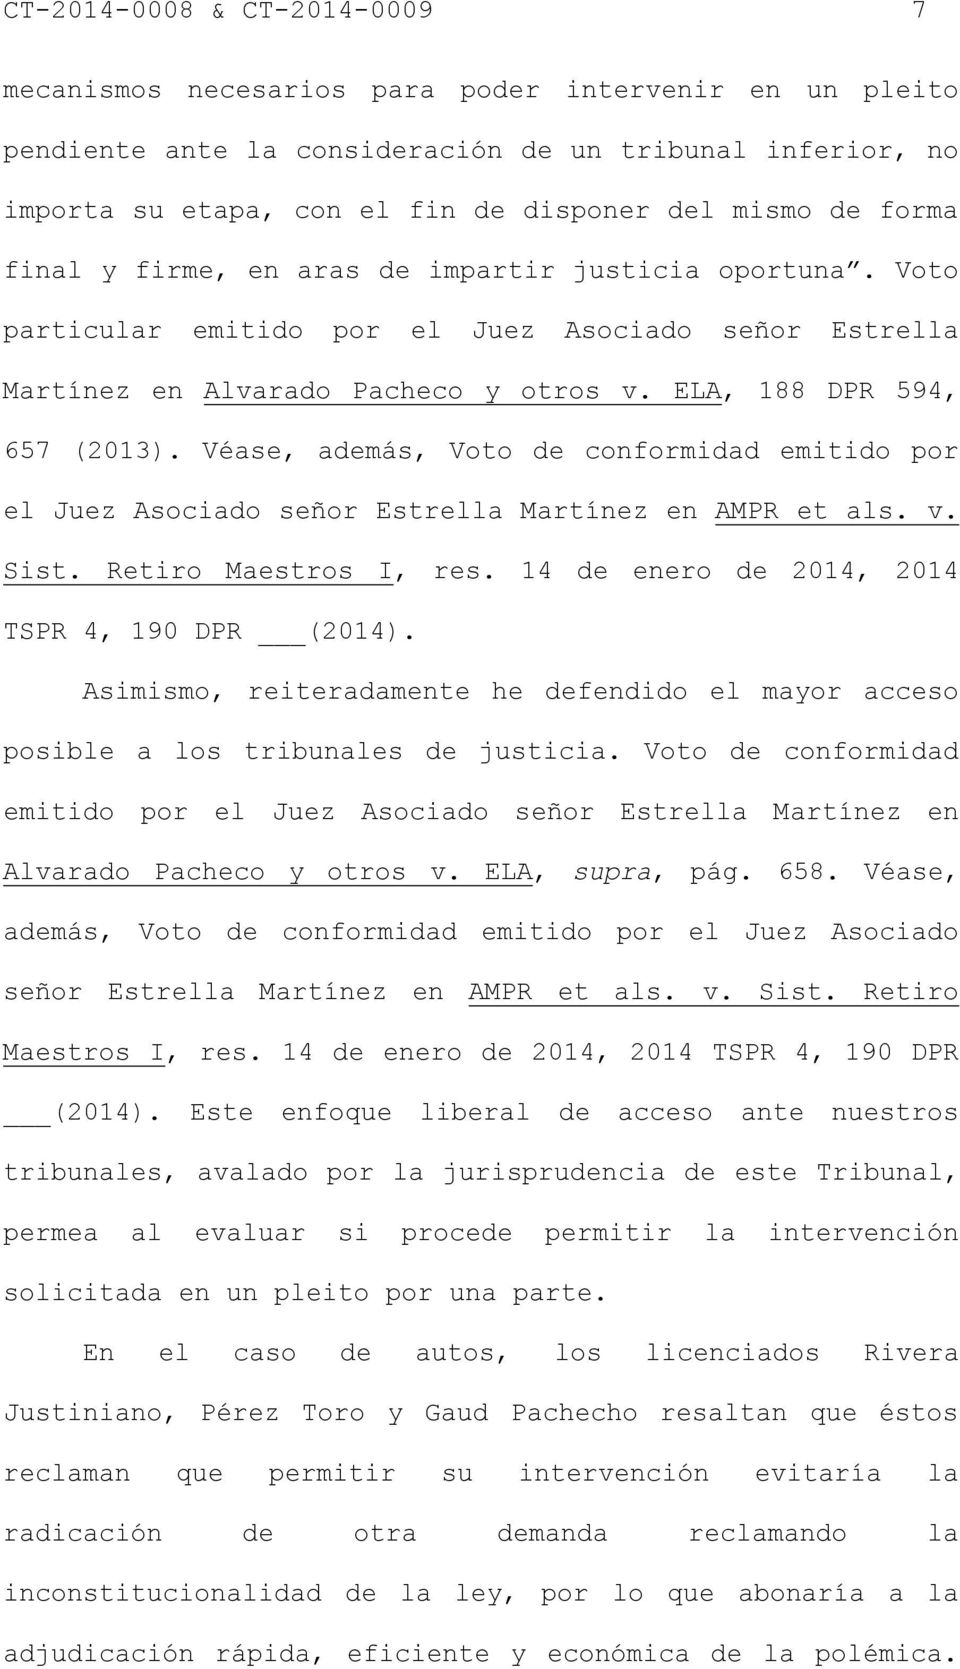 Véase, además, Voto de conformidad emitido por el Juez Asociado señor Estrella Martínez en AMPR et als. v. Sist. Retiro Maestros I, res. 14 de enero de 2014, 2014 TSPR 4, 190 DPR (2014).